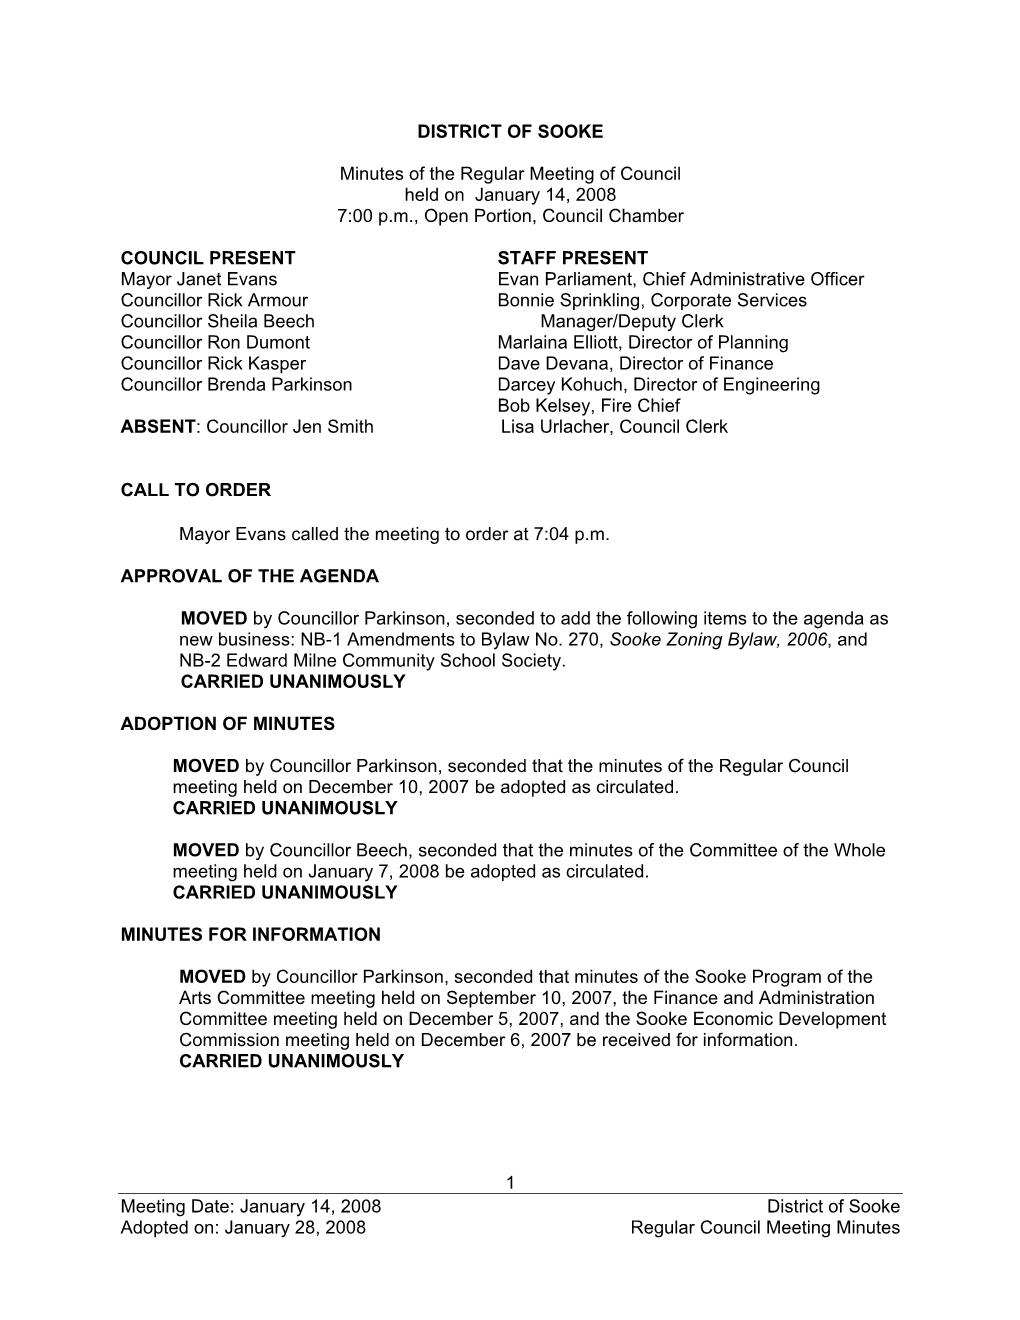 2008 Reg Council Minutes